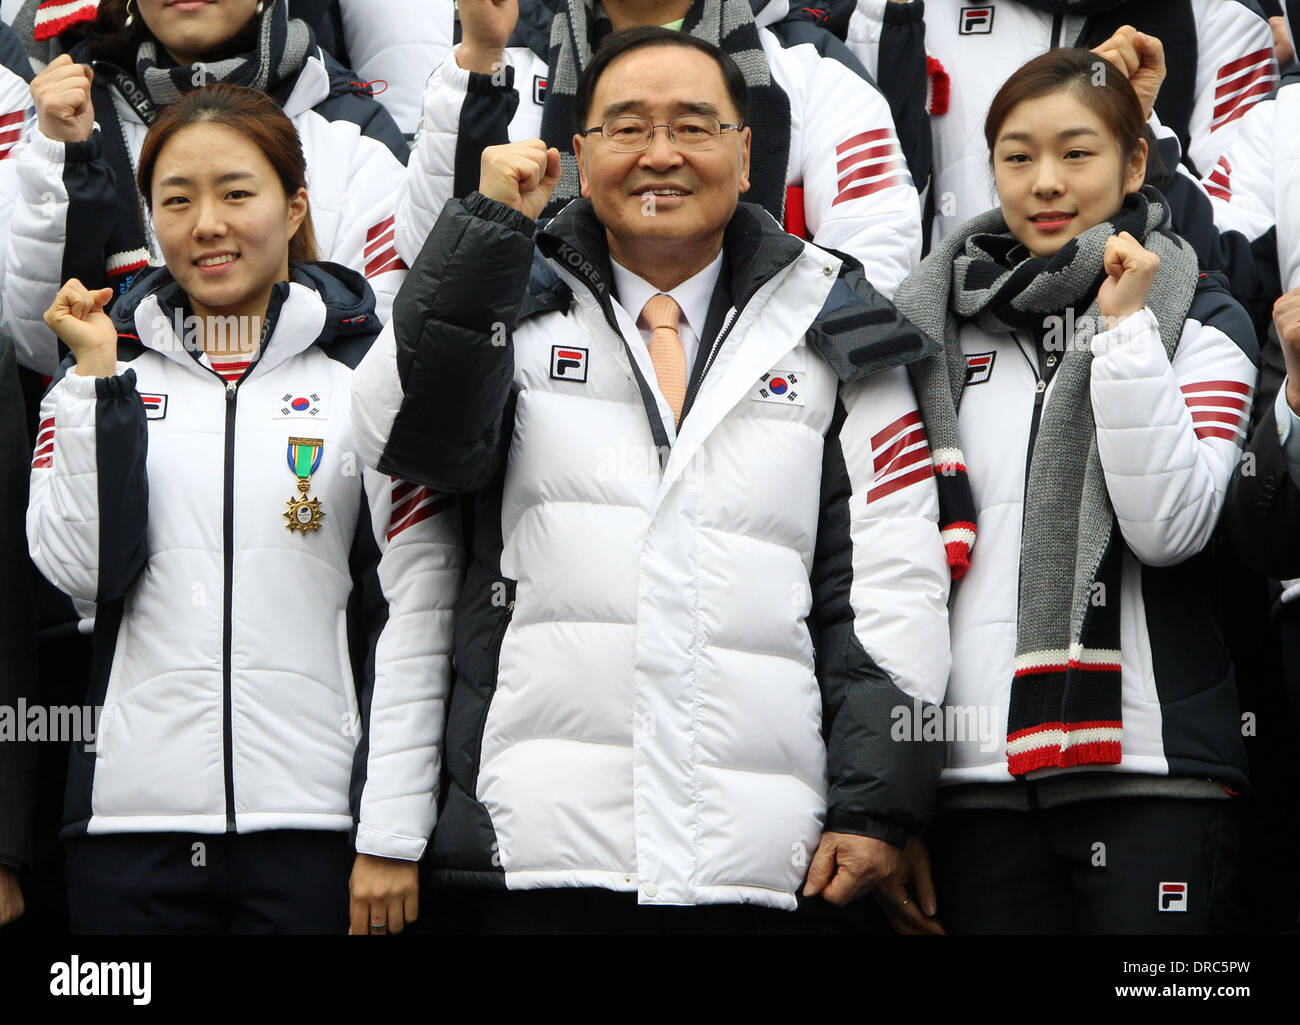 Séoul, Corée du Sud. 23 Jan, 2014. Le Premier Ministre sud-coréen Hong Jung-won (C) et les athlètes assister à la cérémonie inaugurale de la prochaine des Jeux Olympiques d'hiver de Sotchi en 2014 à Séoul, Corée du Sud, le 23 janvier 2014. Credit : Park Jin-hee/Xinhua/Alamy Live News Banque D'Images